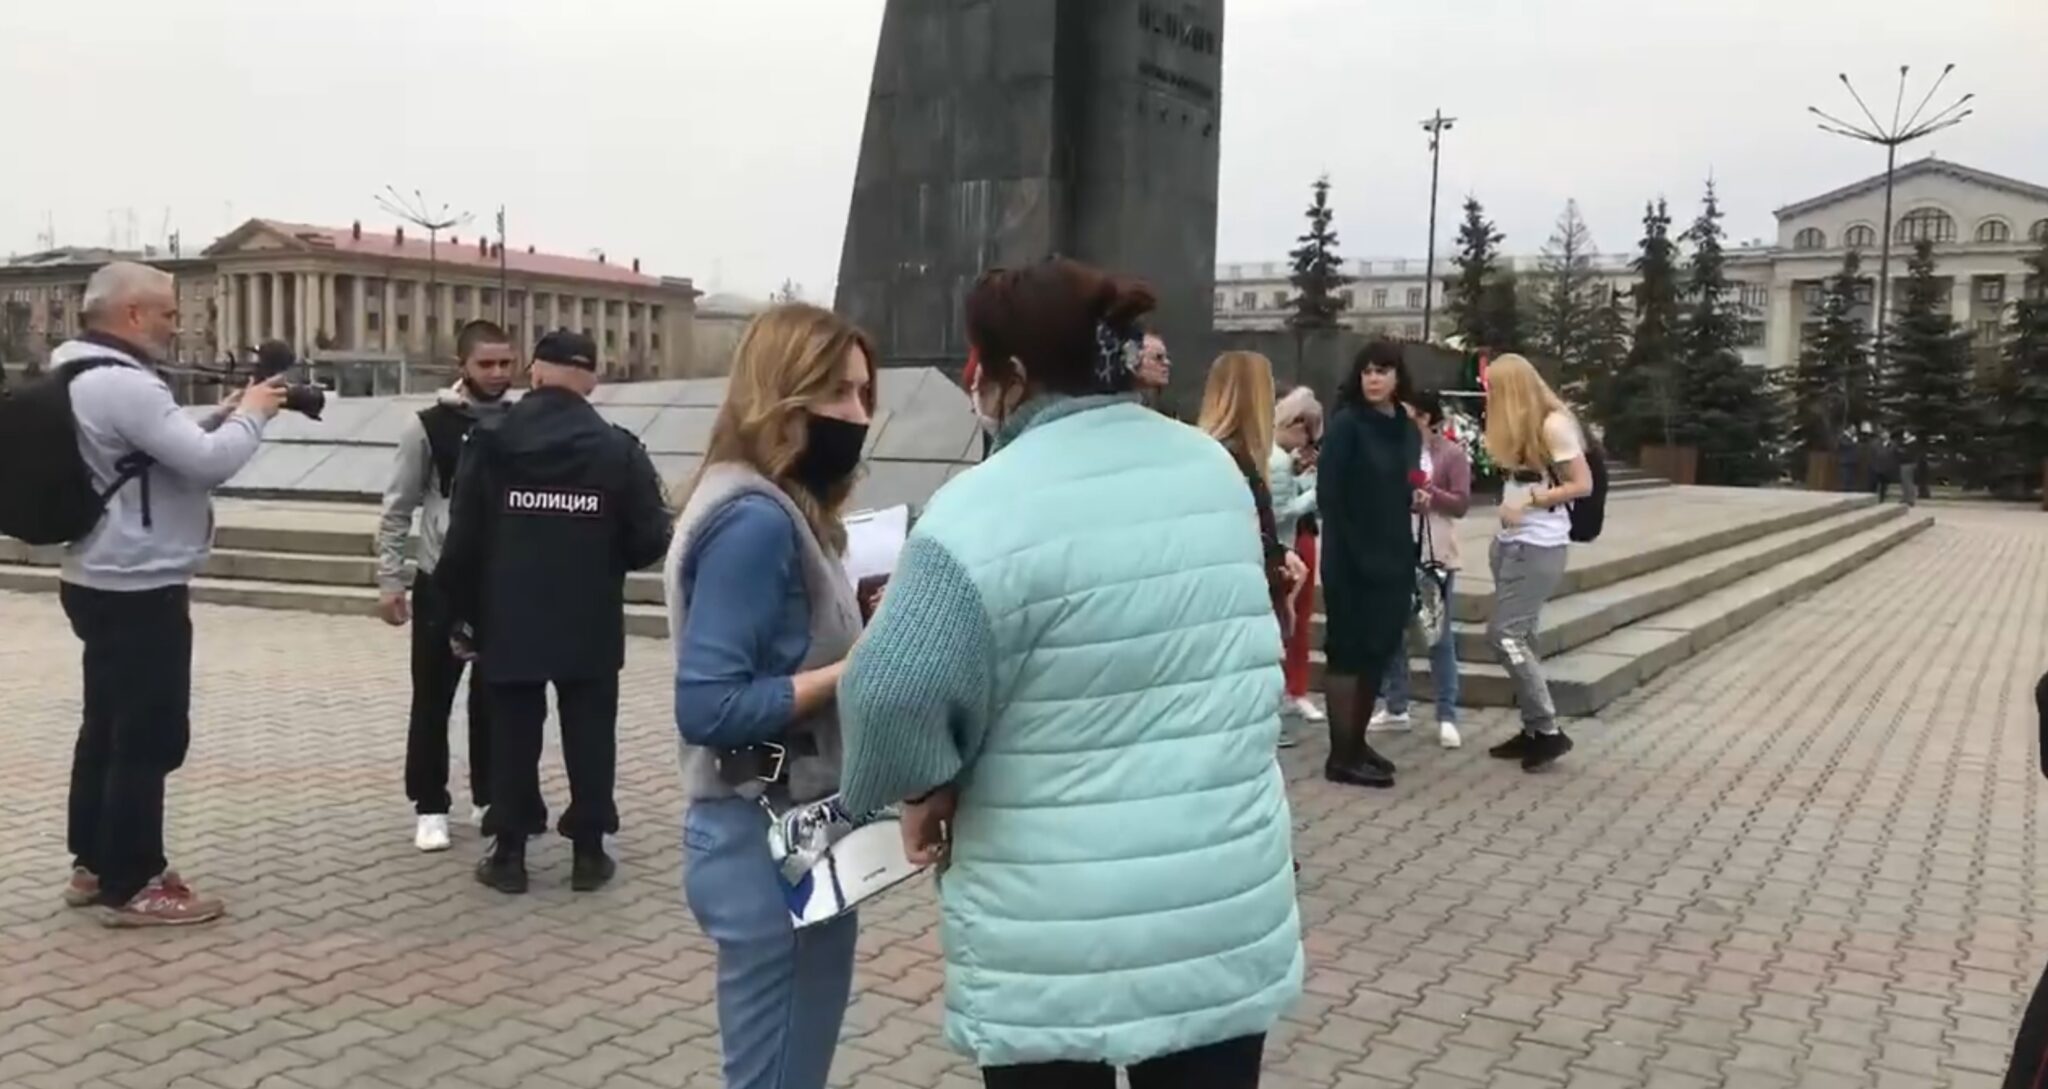 Митинг против режима изоляции в Красноярске. Фото: скрин видео